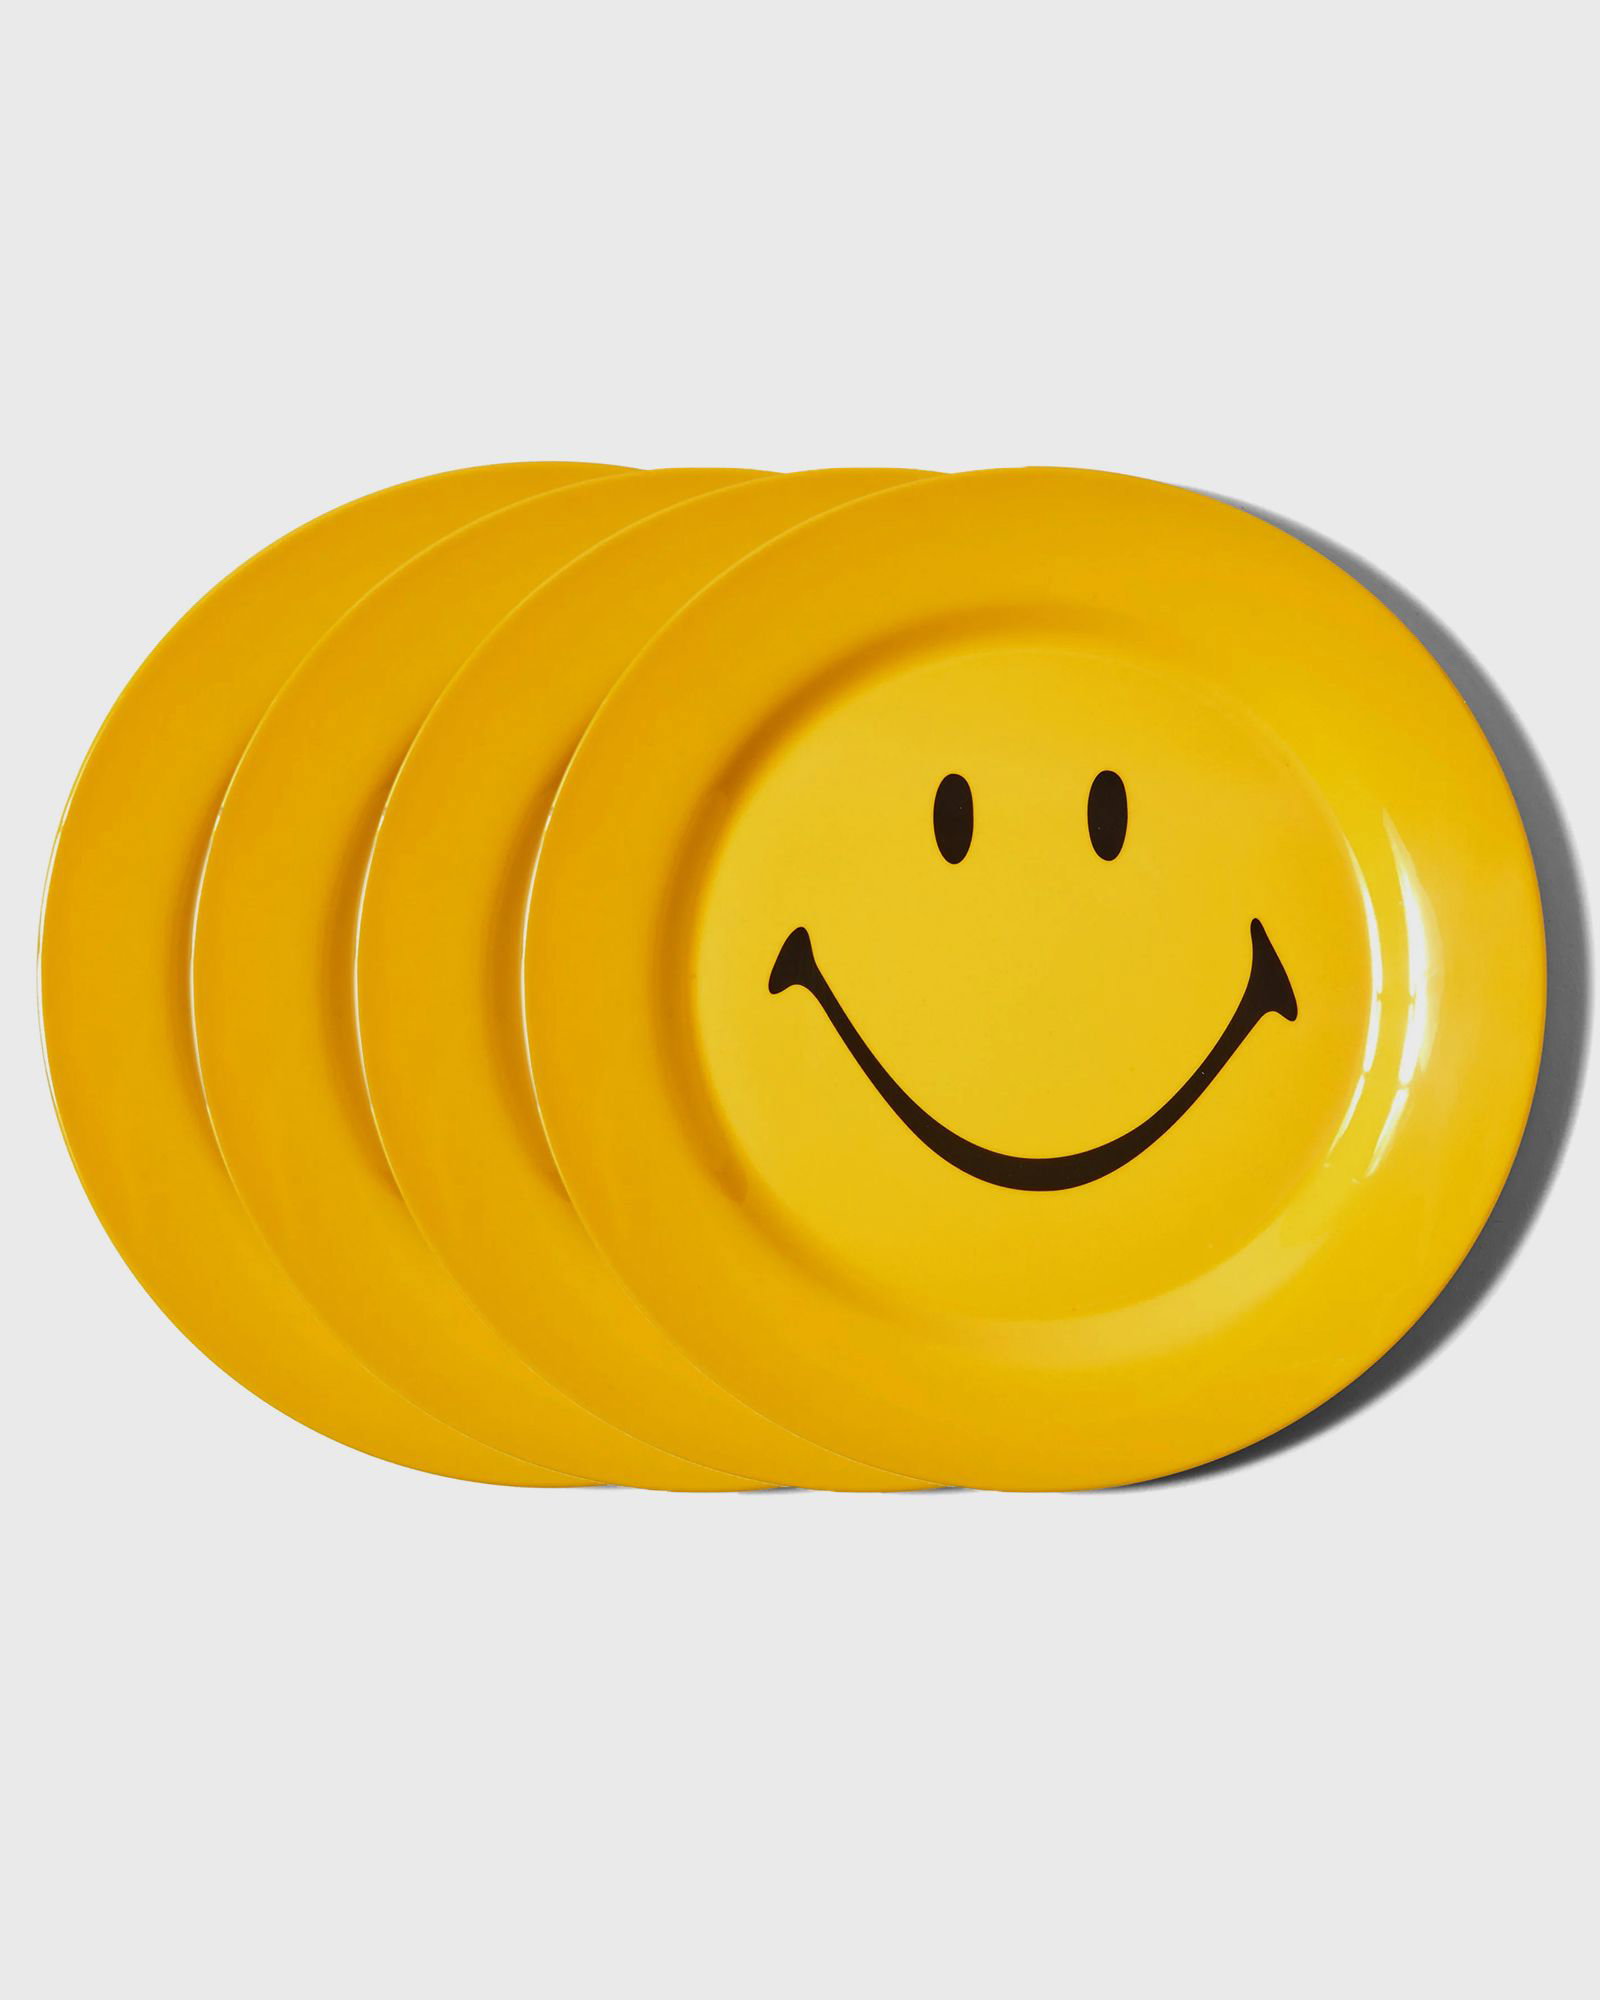 Home decor MARKET Smiley Plate 4 Piece Set 840160552274 | FLEXDOG